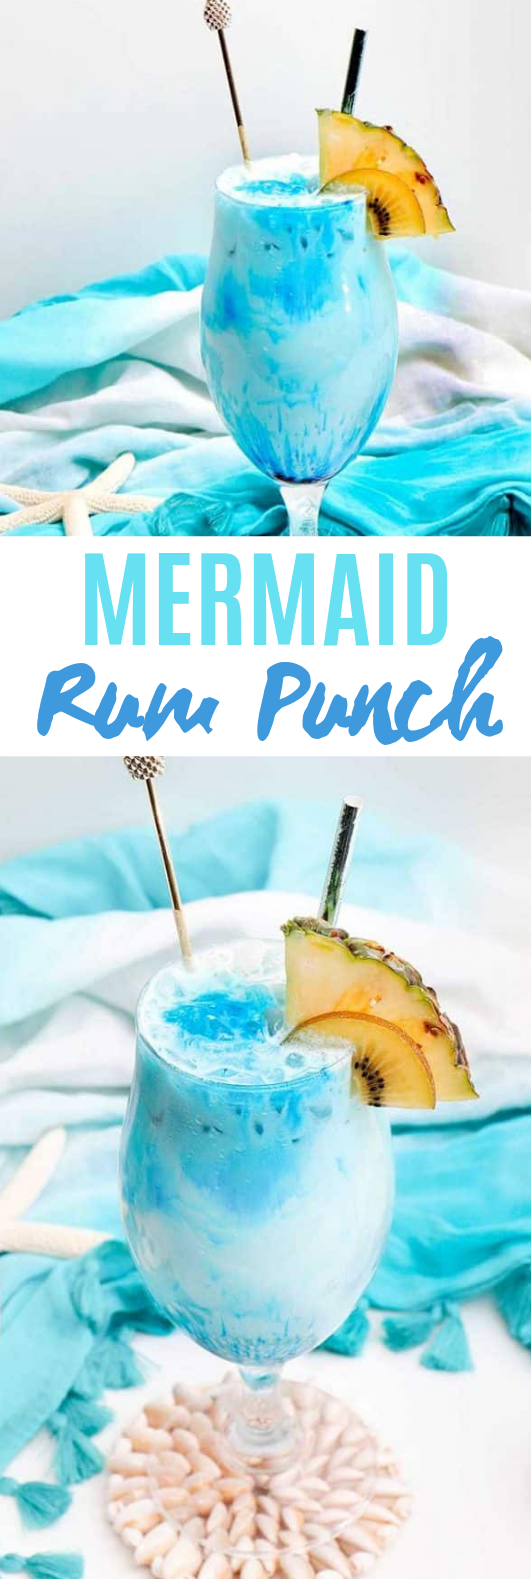 Mermaid Rum Punch #drinks #cocktails